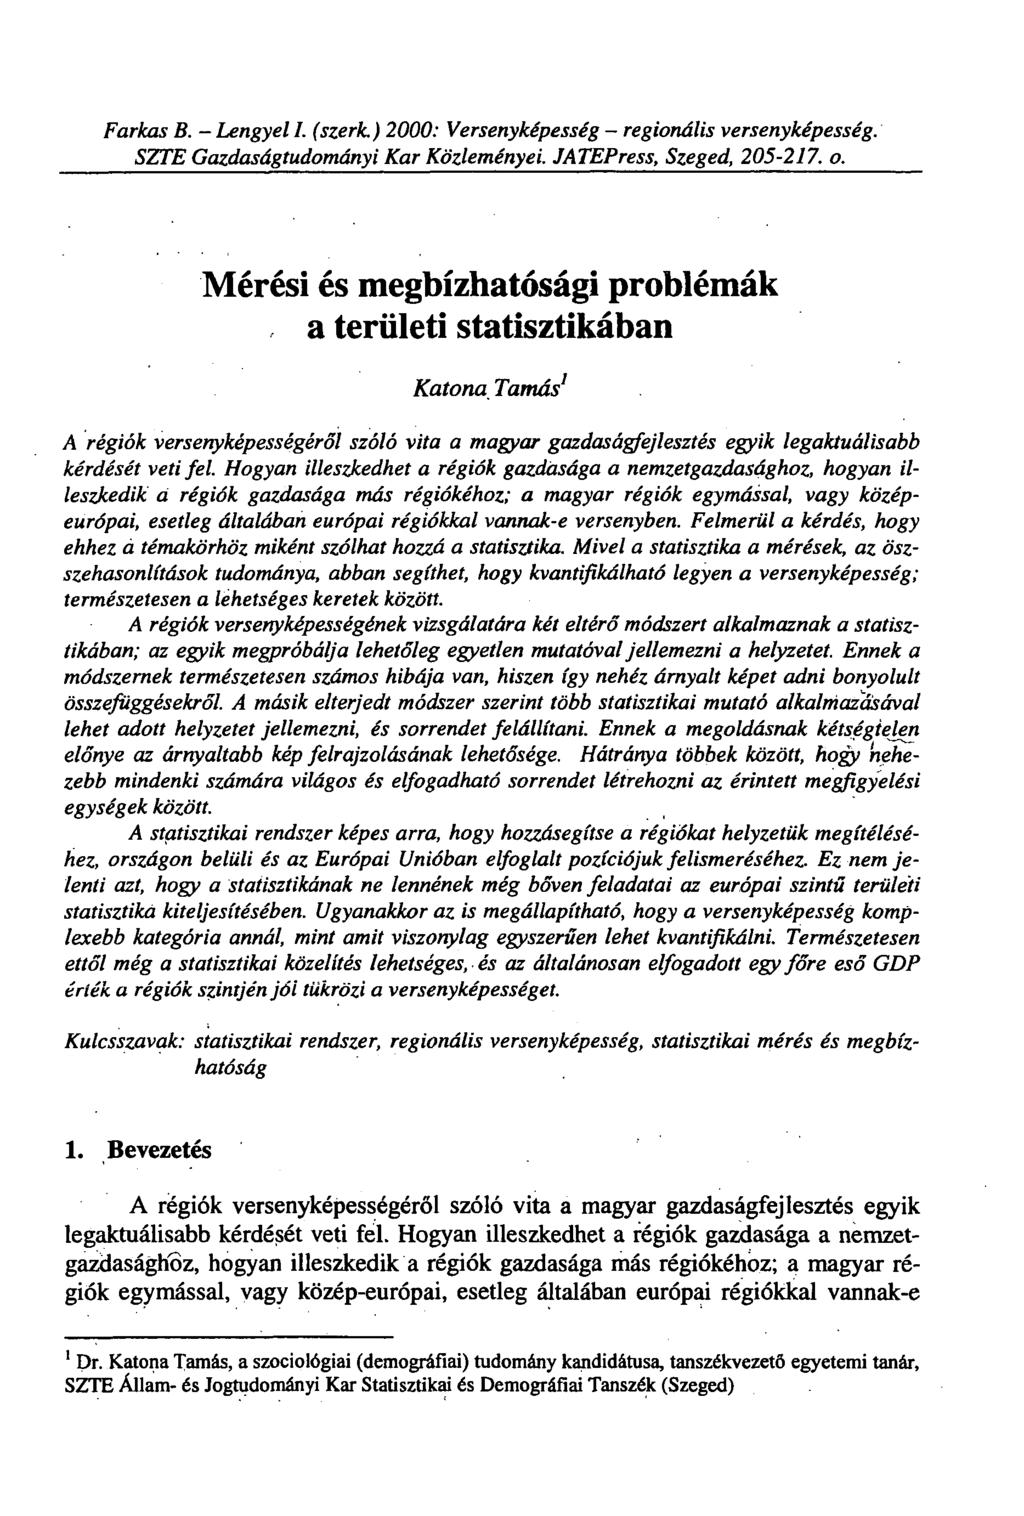 Farkas B. - Lengyel I. (szerk.) 2000: Versenyképesség - regionális versenyképesség. SZTE Gazdaságtudományi Kar Közleményei. JATEPress, Szeged, 205-202. o.